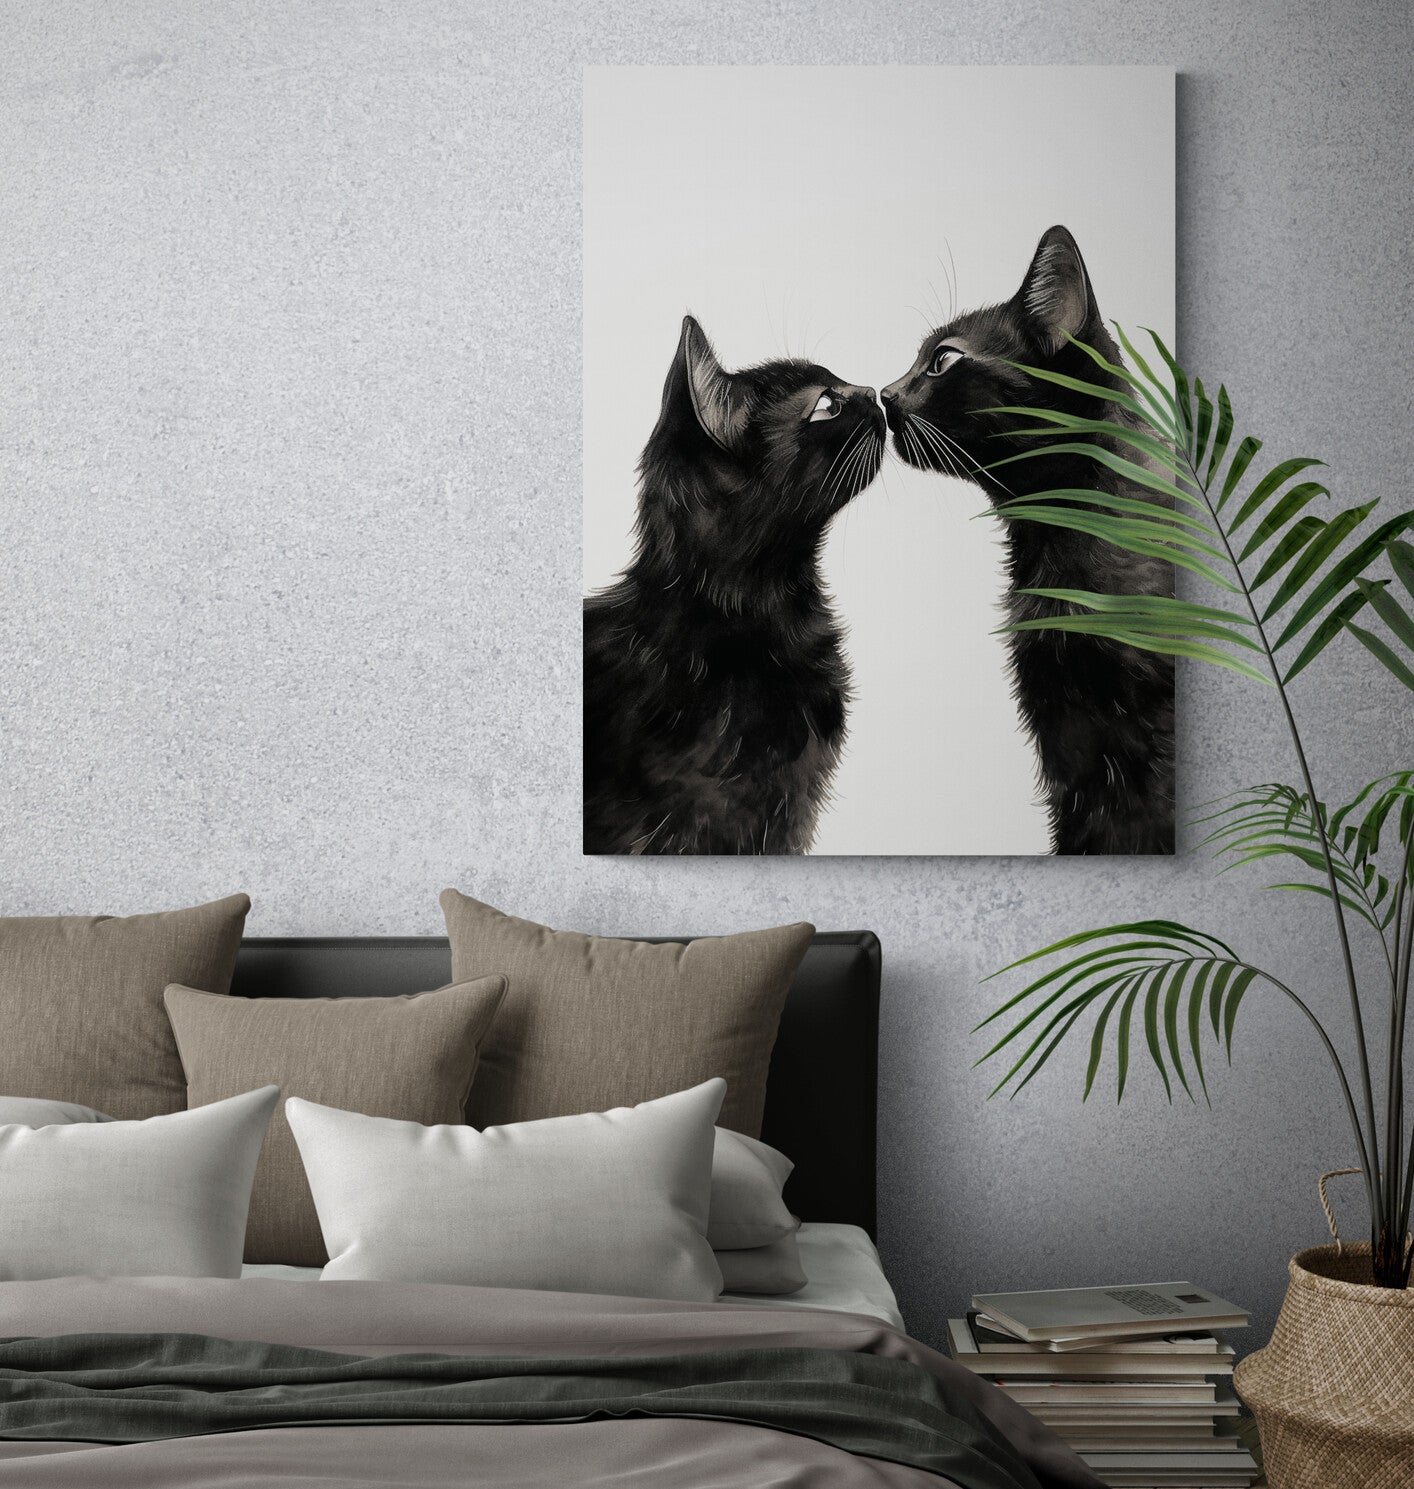 Le regard intense de deux félins se capture sur une toile, dominant une chambre cosy aux tons neutres.